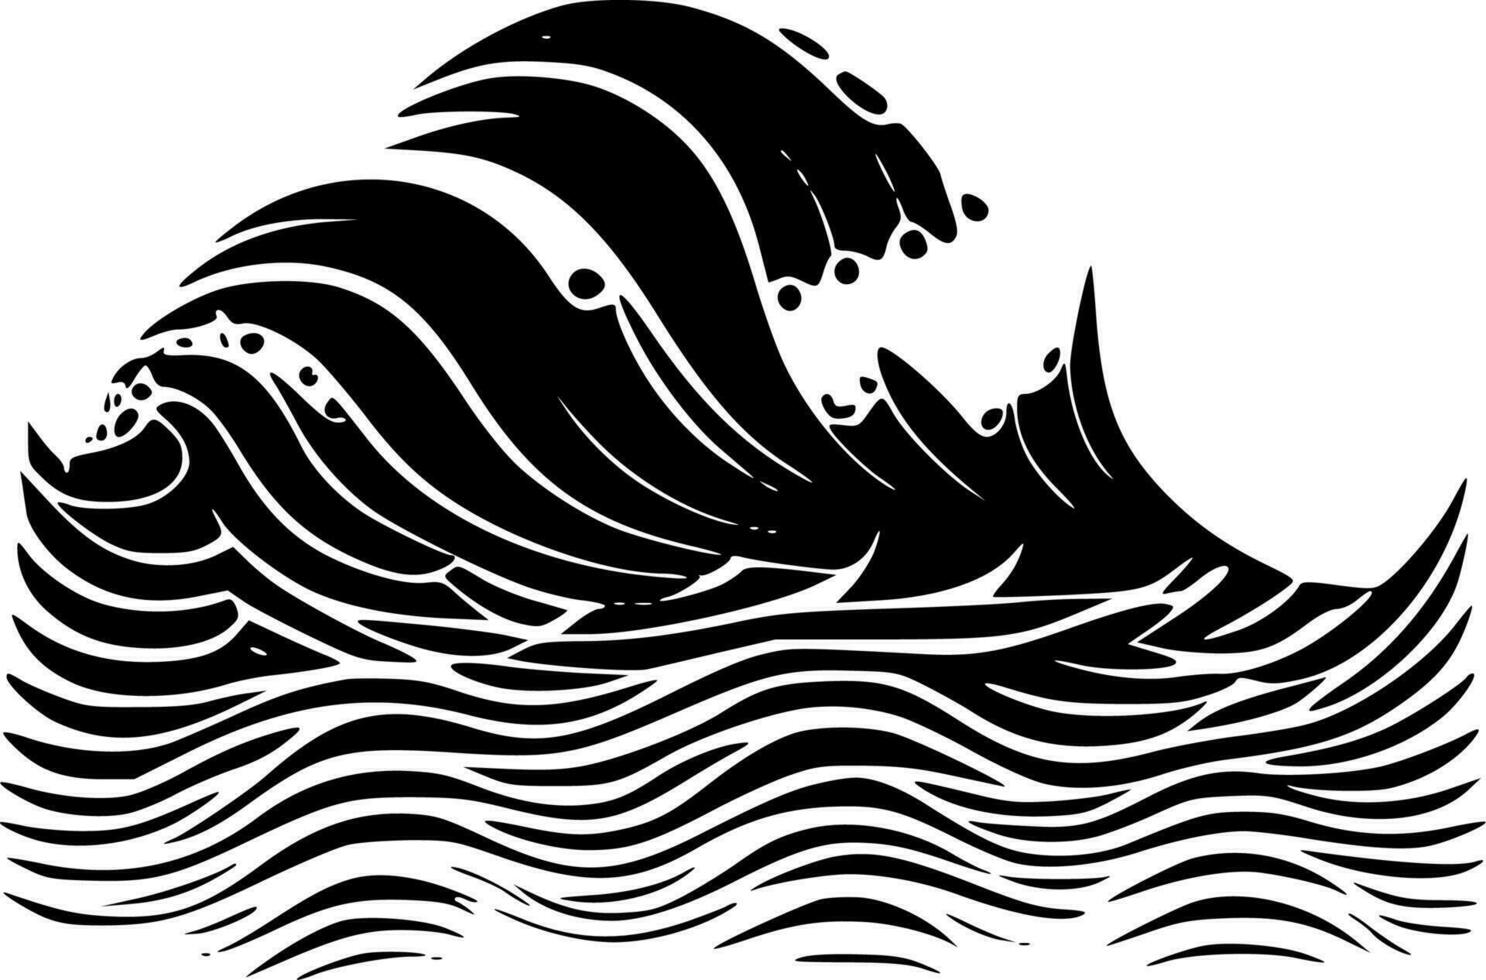 vågor - minimalistisk och platt logotyp - vektor illustration